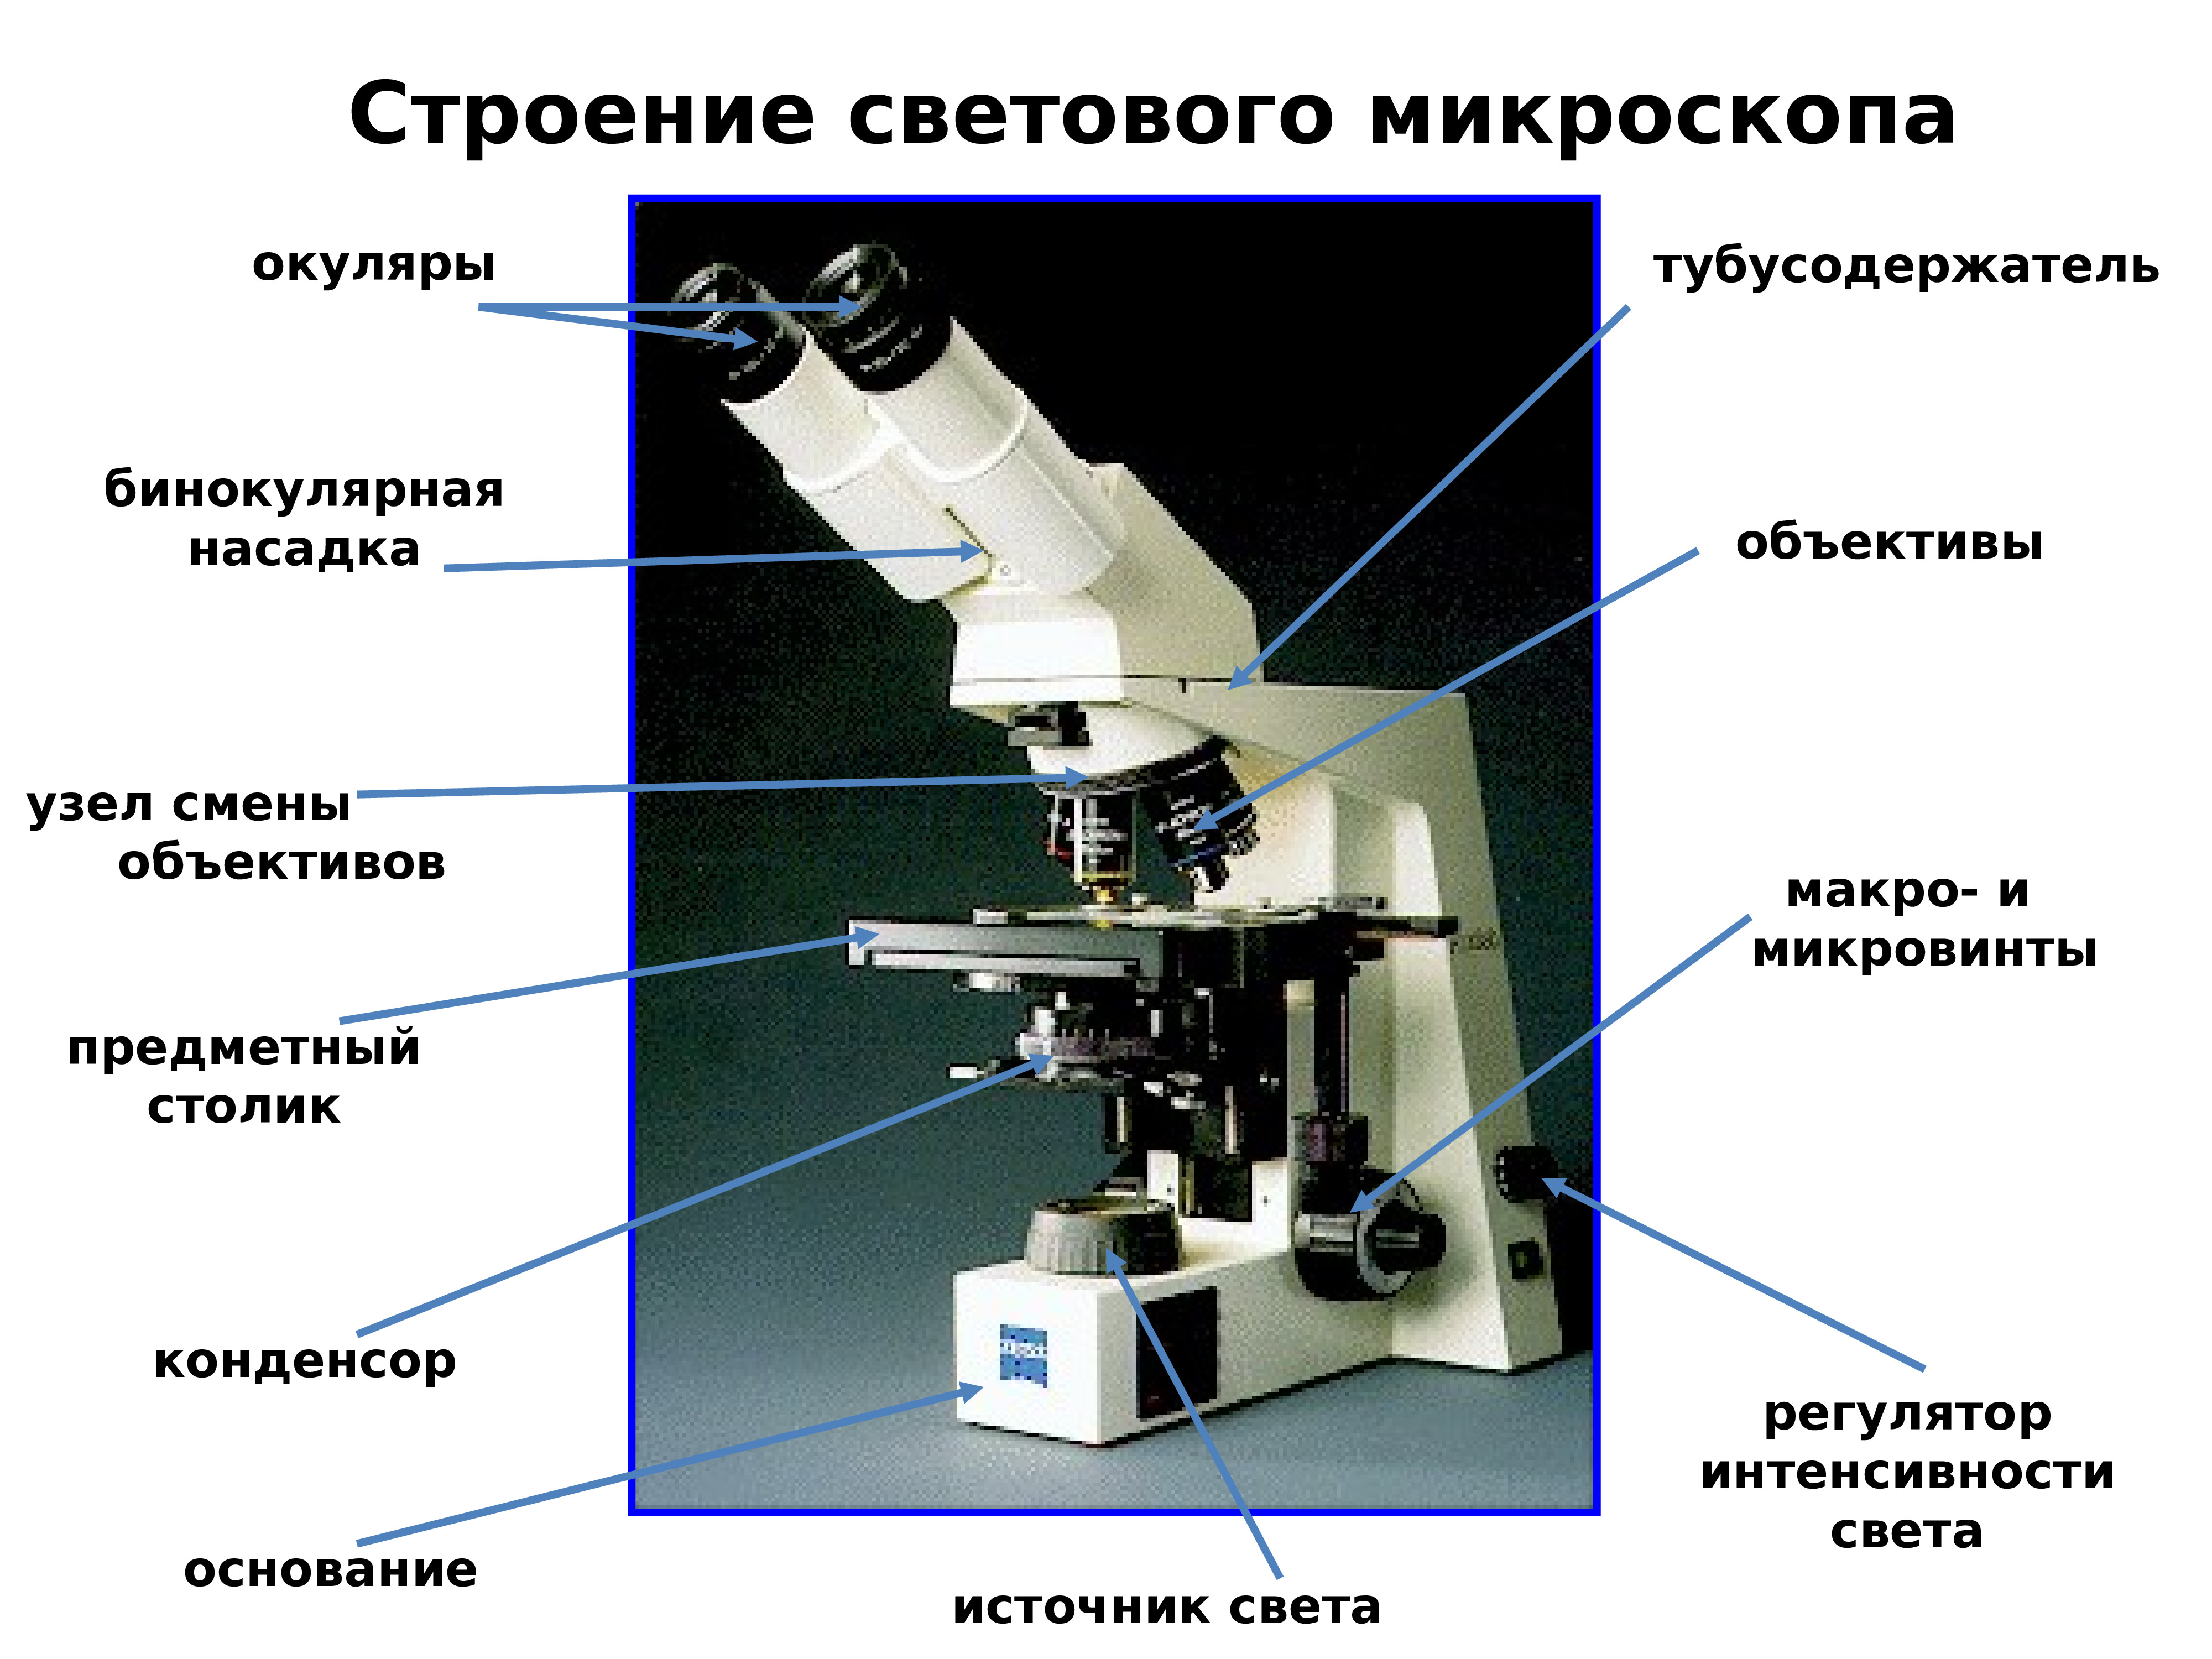 Цифровой микроскоп строение с подписями и названиями. Световой микроскоп строение конденсор. Строение микроскопа тубусодержатель. Строение светового микроскопа гистология. Строение микроскопа оптического микроскопа.